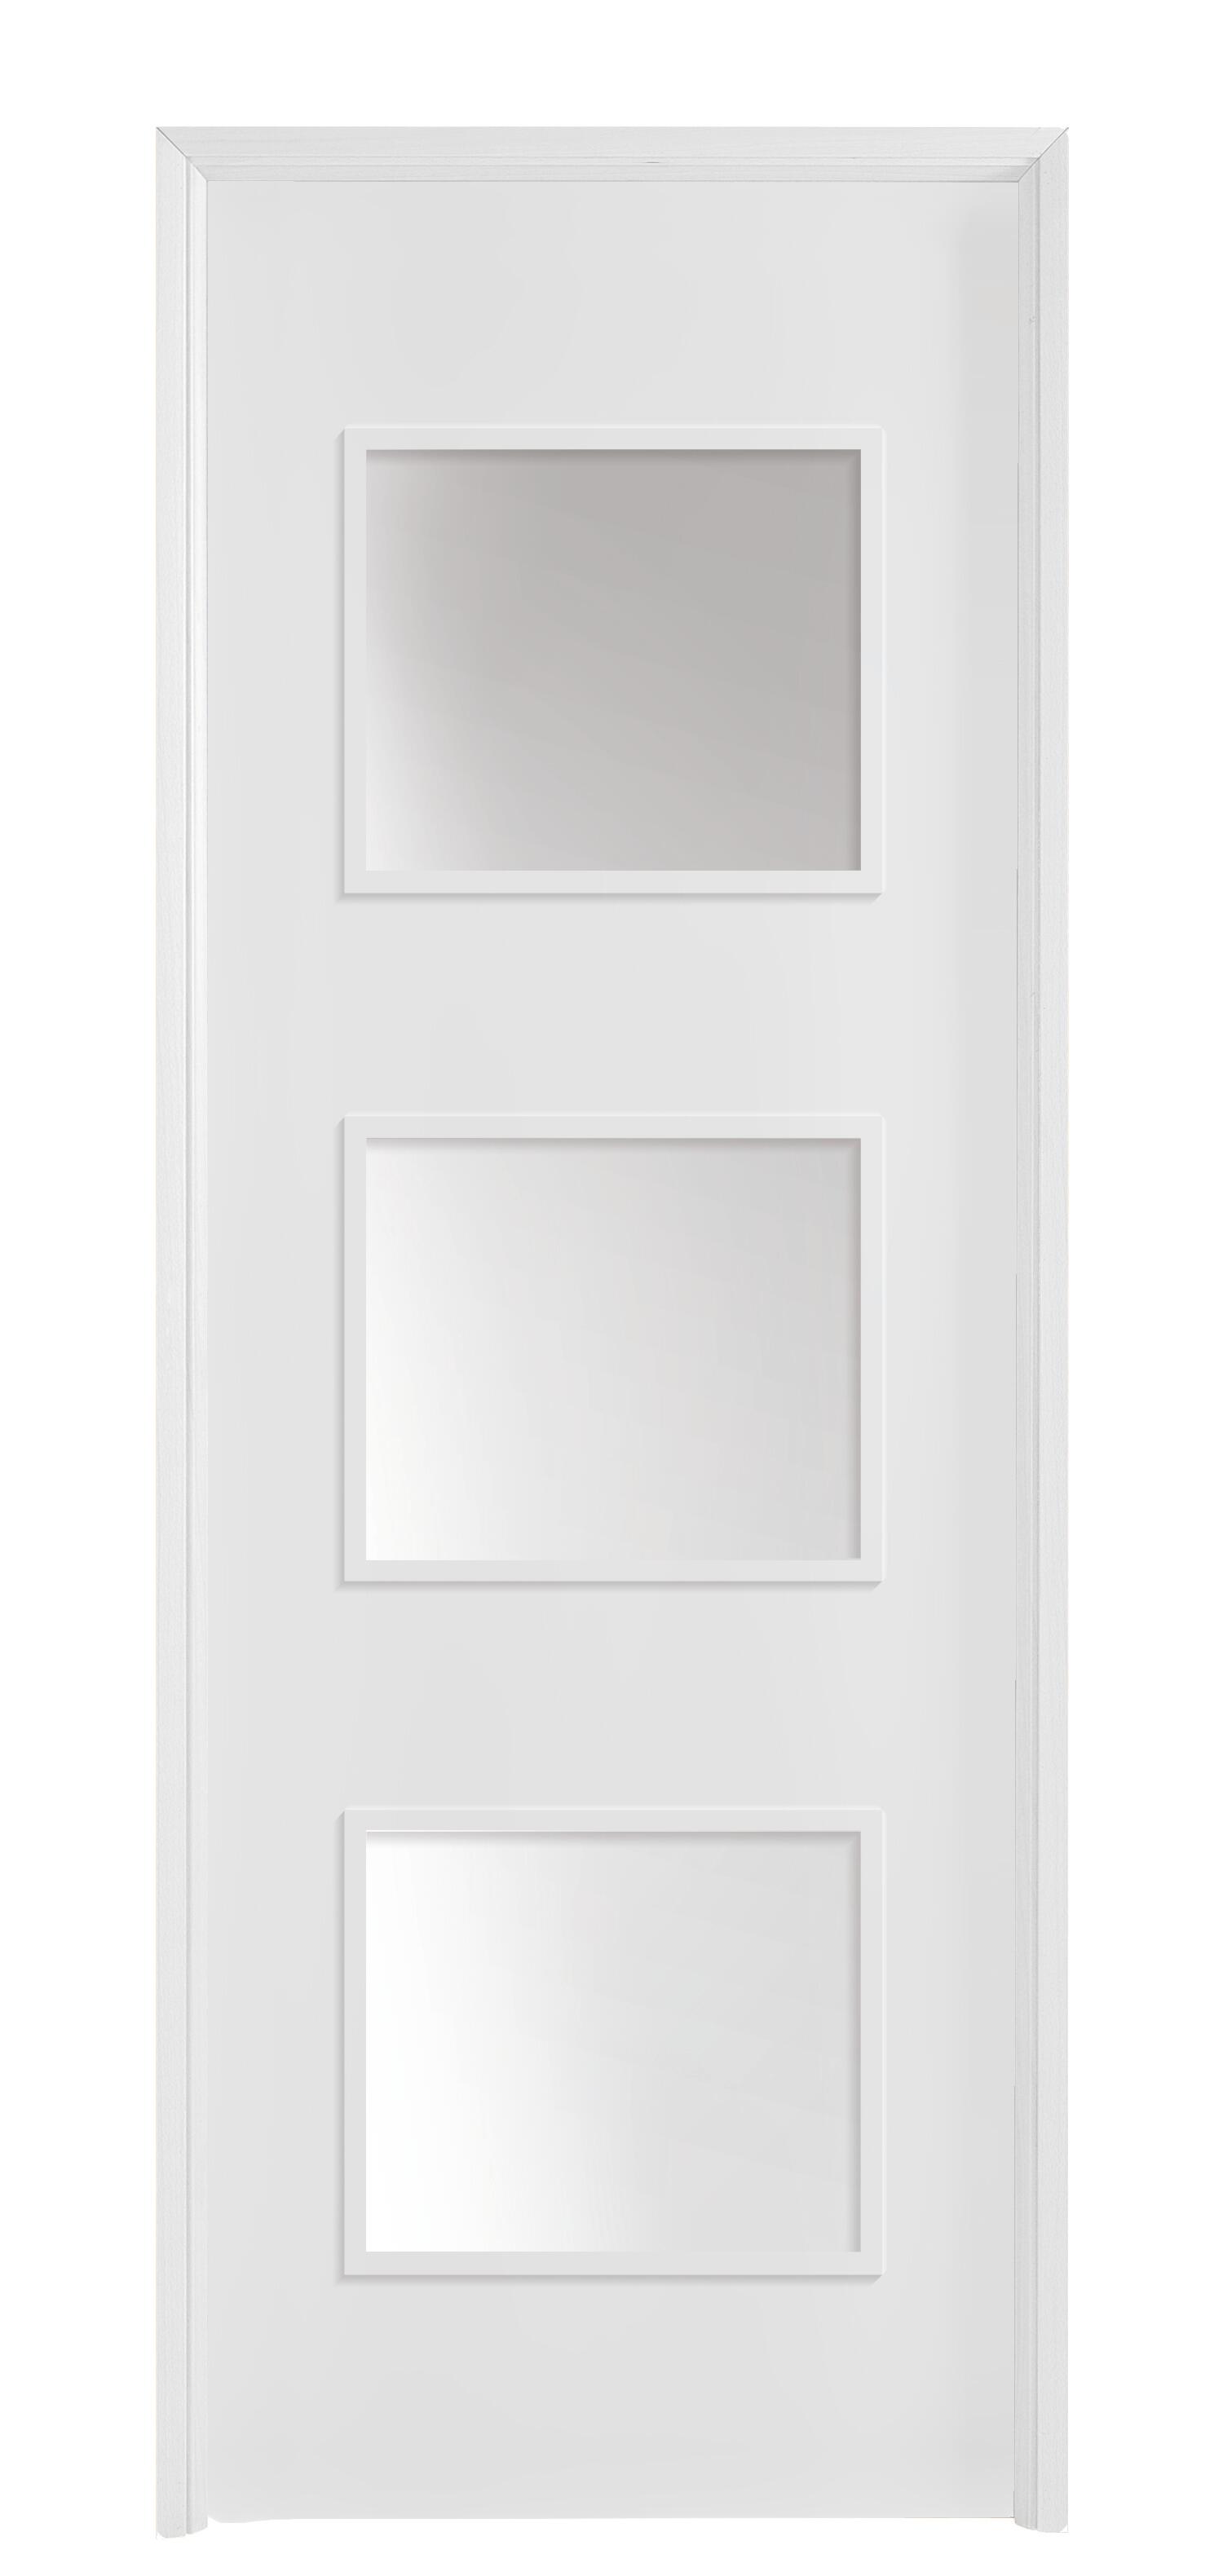 Puerta con cristal bari plus blanca 9x2x92,5 cm i